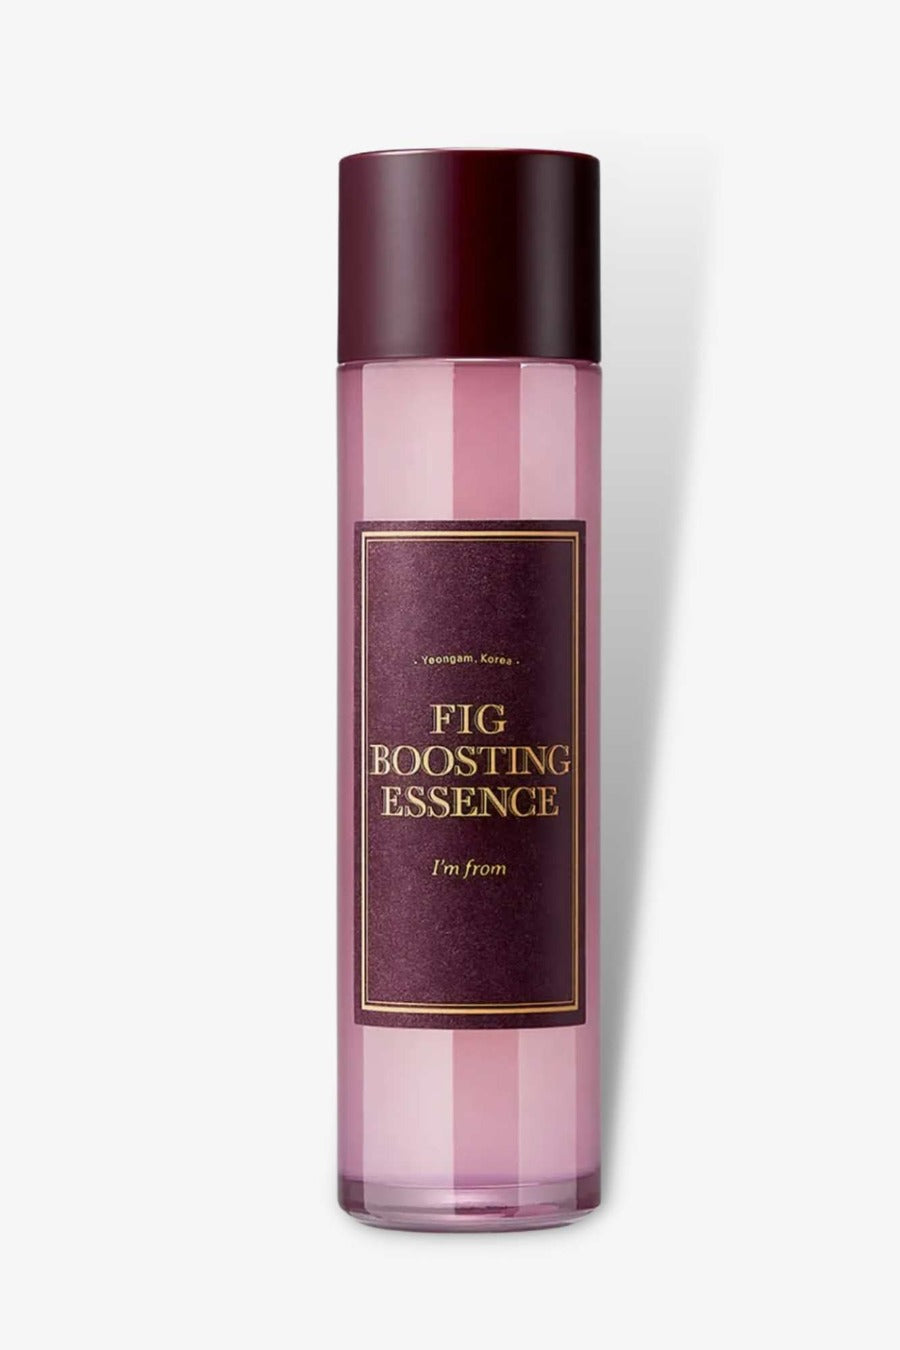 I'm From - Fig Boosting Essence - 150ml australian skincare korean k beauty